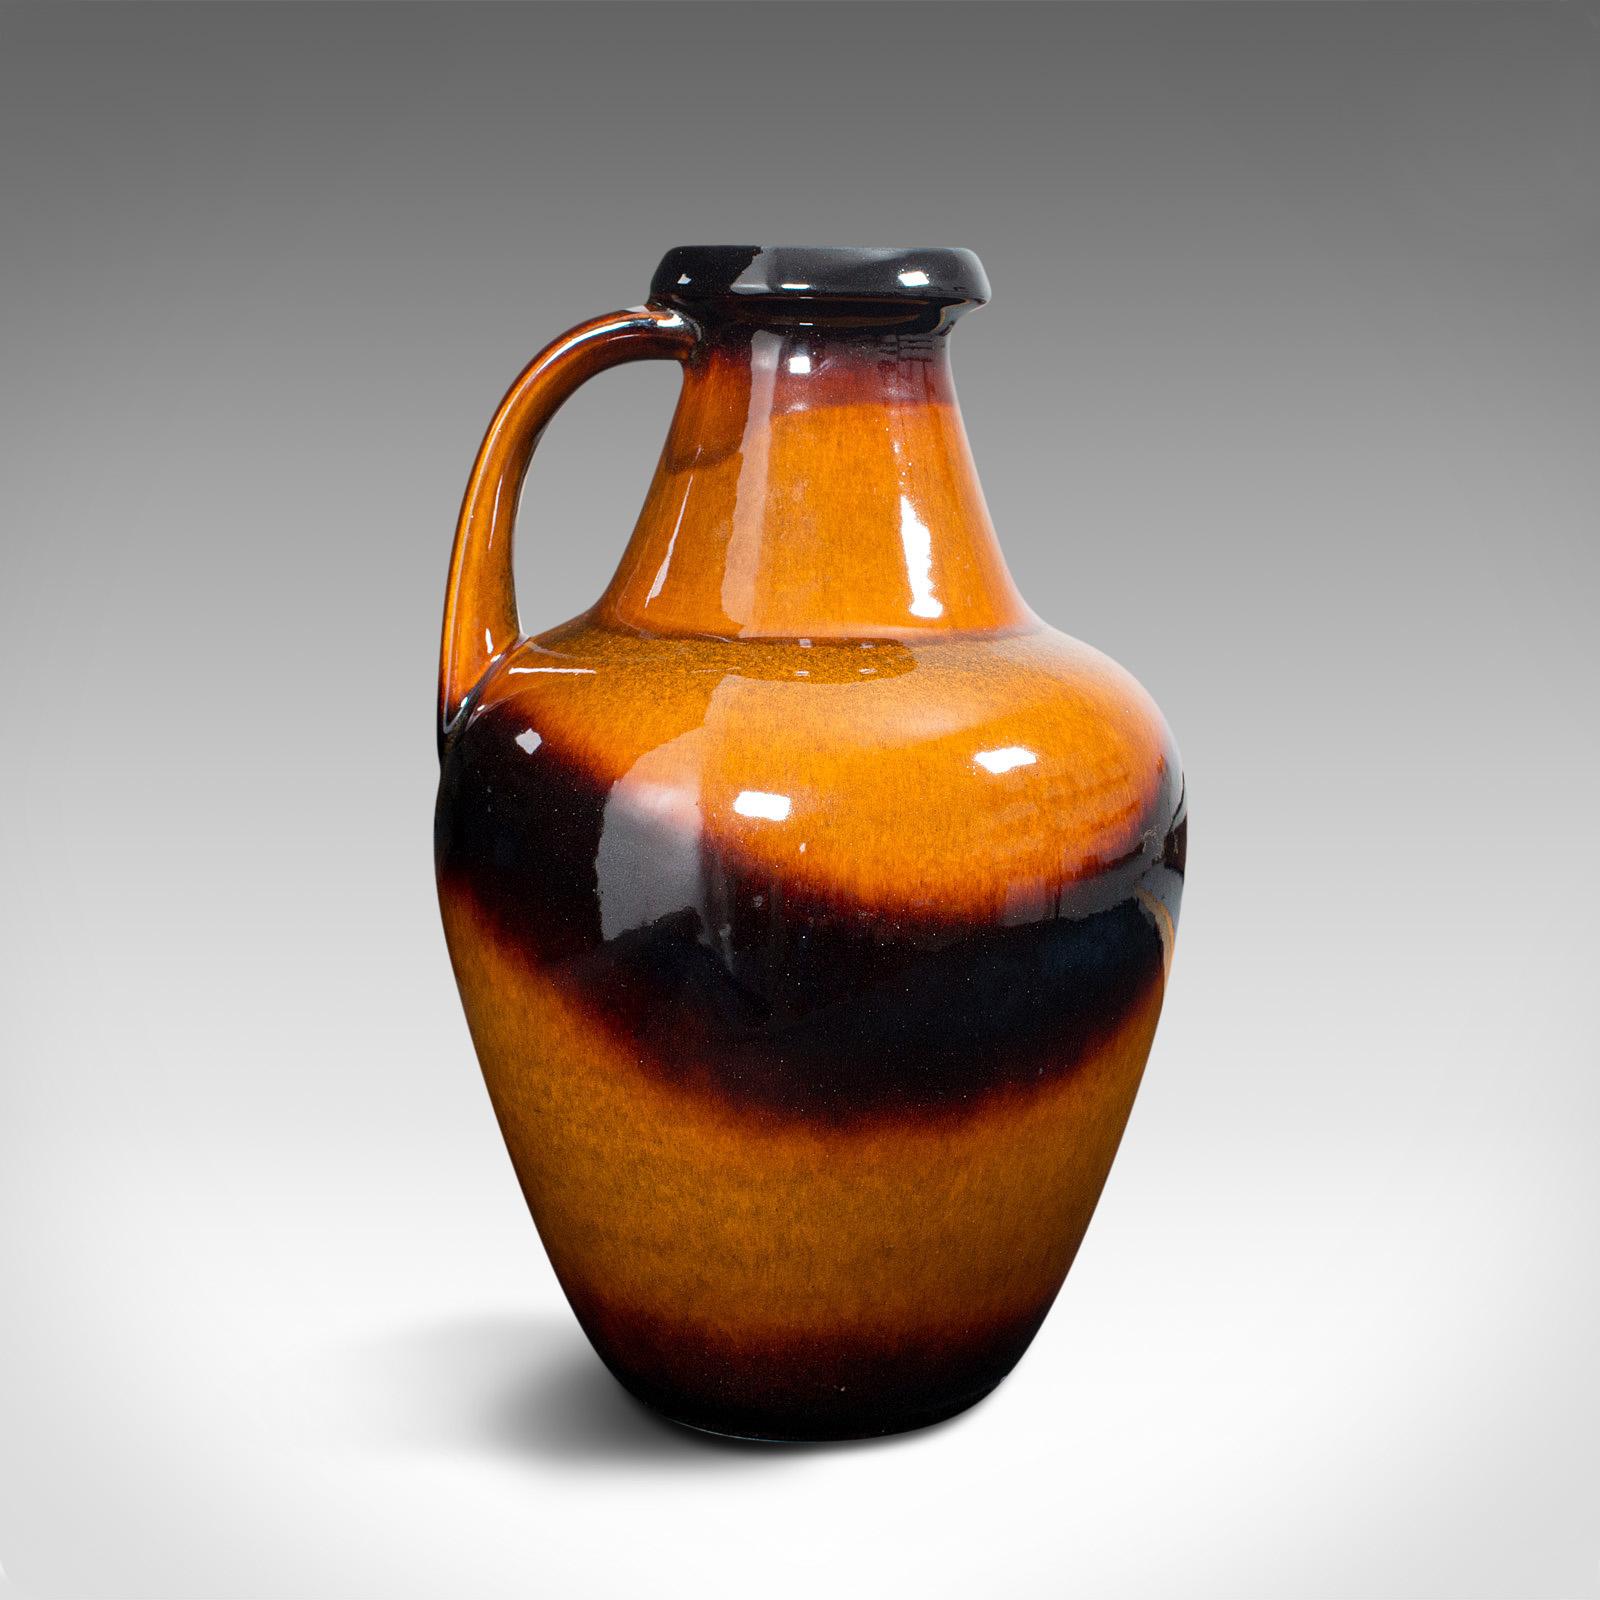 Il s'agit d'une grande amphore décorative vintage. Pichet ou vase allemand en céramique, datant de la fin du 20e siècle, vers 1970.

Exemple frappant et brillant de céramique de lave ouest-allemande
Présentant une patine d'usage désirable, sans